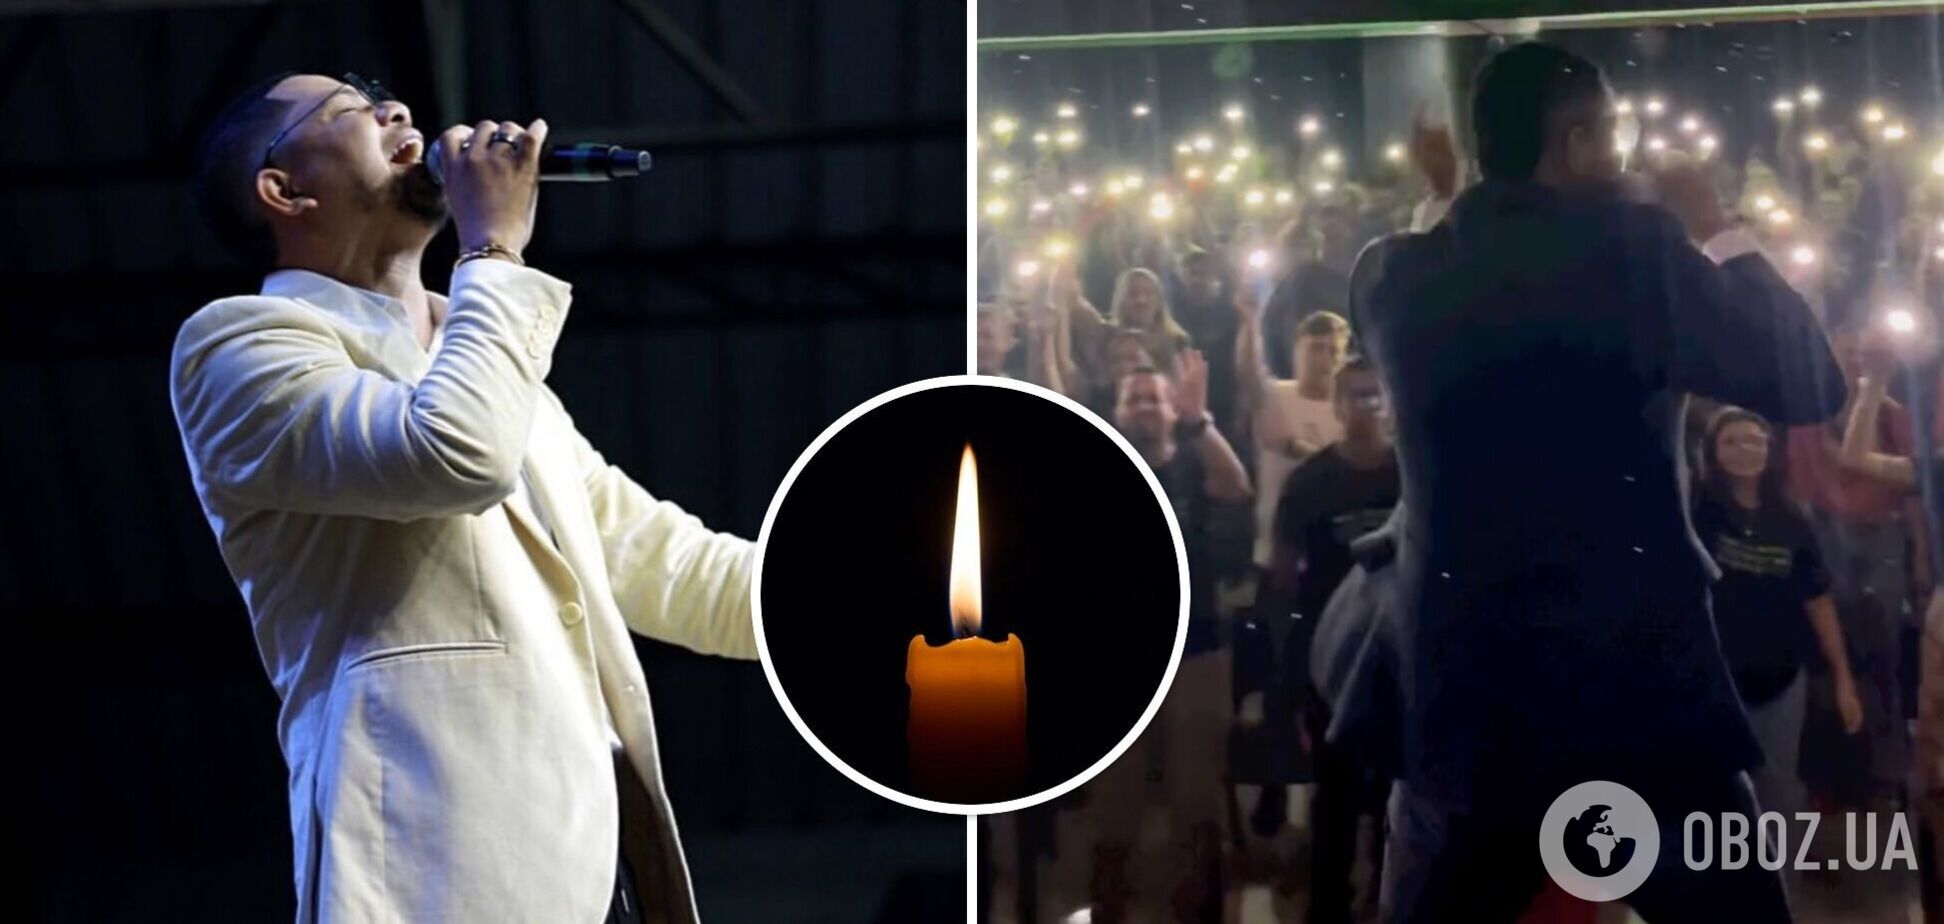 'Я устал': 30-летний певец Педро Энрике упал и скончался на сцене во время своего выступления. Видео